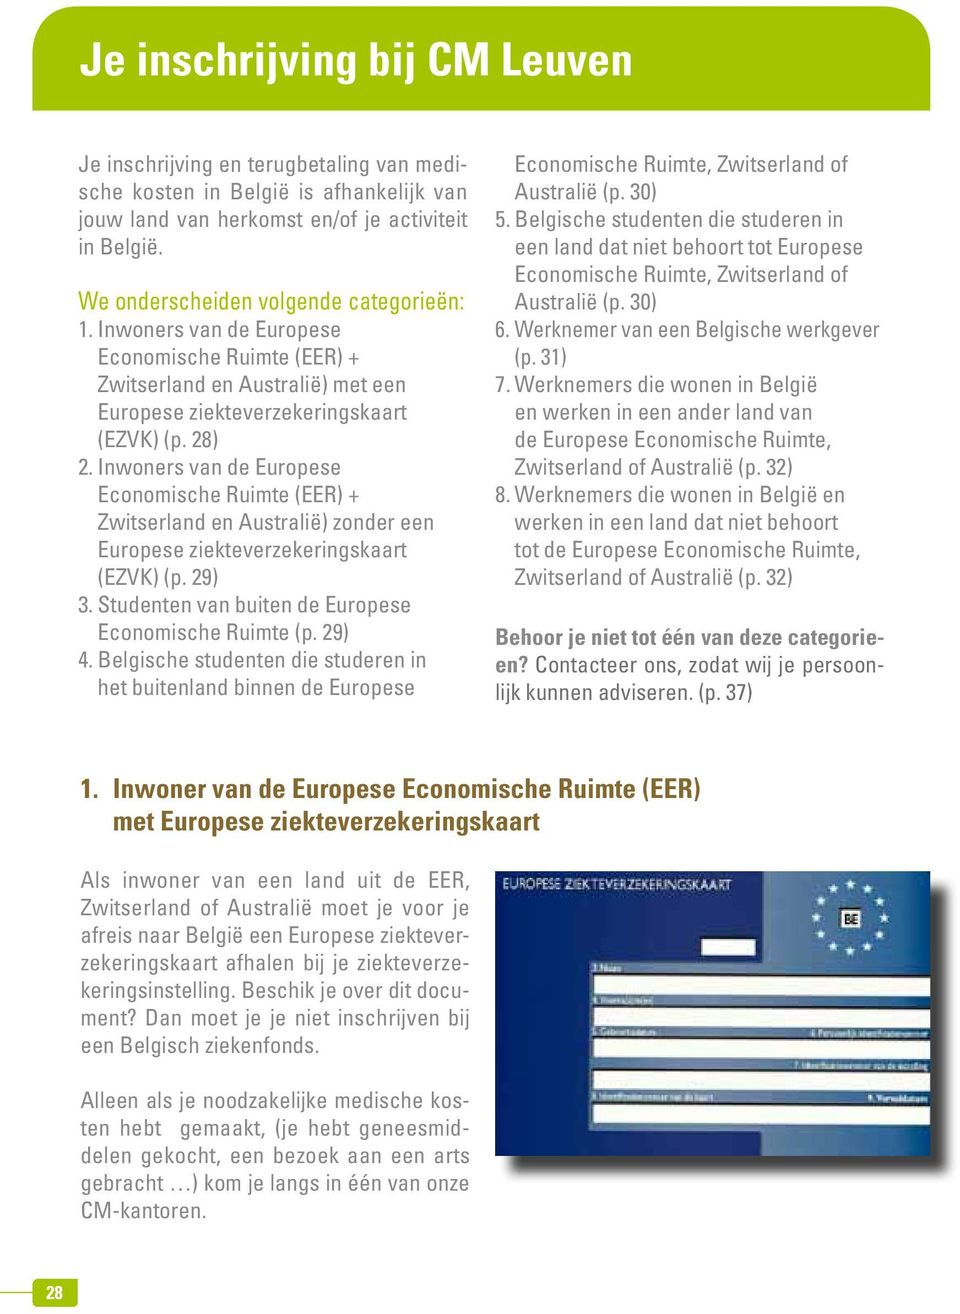 Inwoners van de Europese Economische Ruimte (EER) + Zwitserland en Australië) zonder een Europese ziekteverzekeringskaart (EZVK) (p. 29) 3. Studenten van buiten de Europese Economische Ruimte (p.